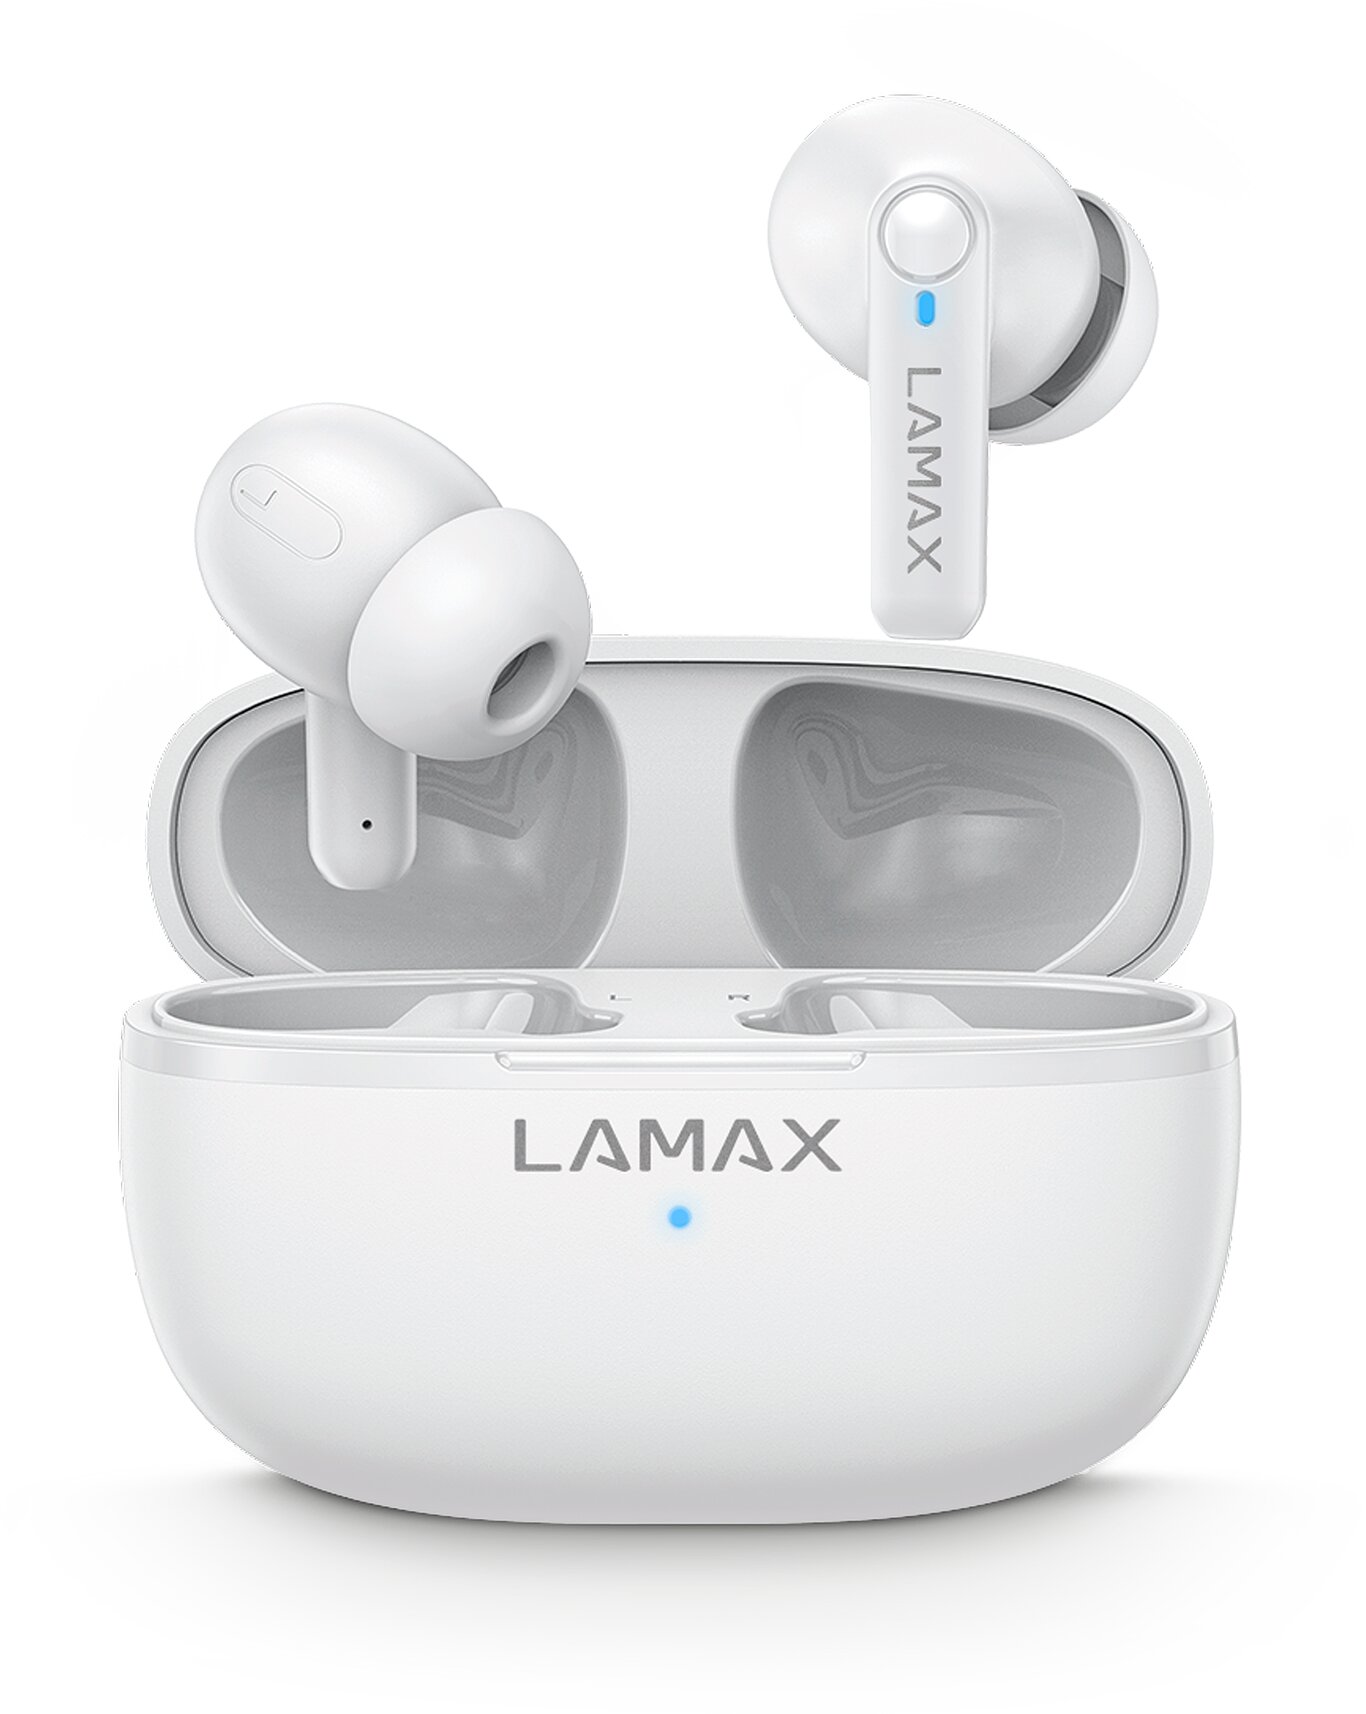 LAMAX Clips1 Play White - Zvuk i design v topu